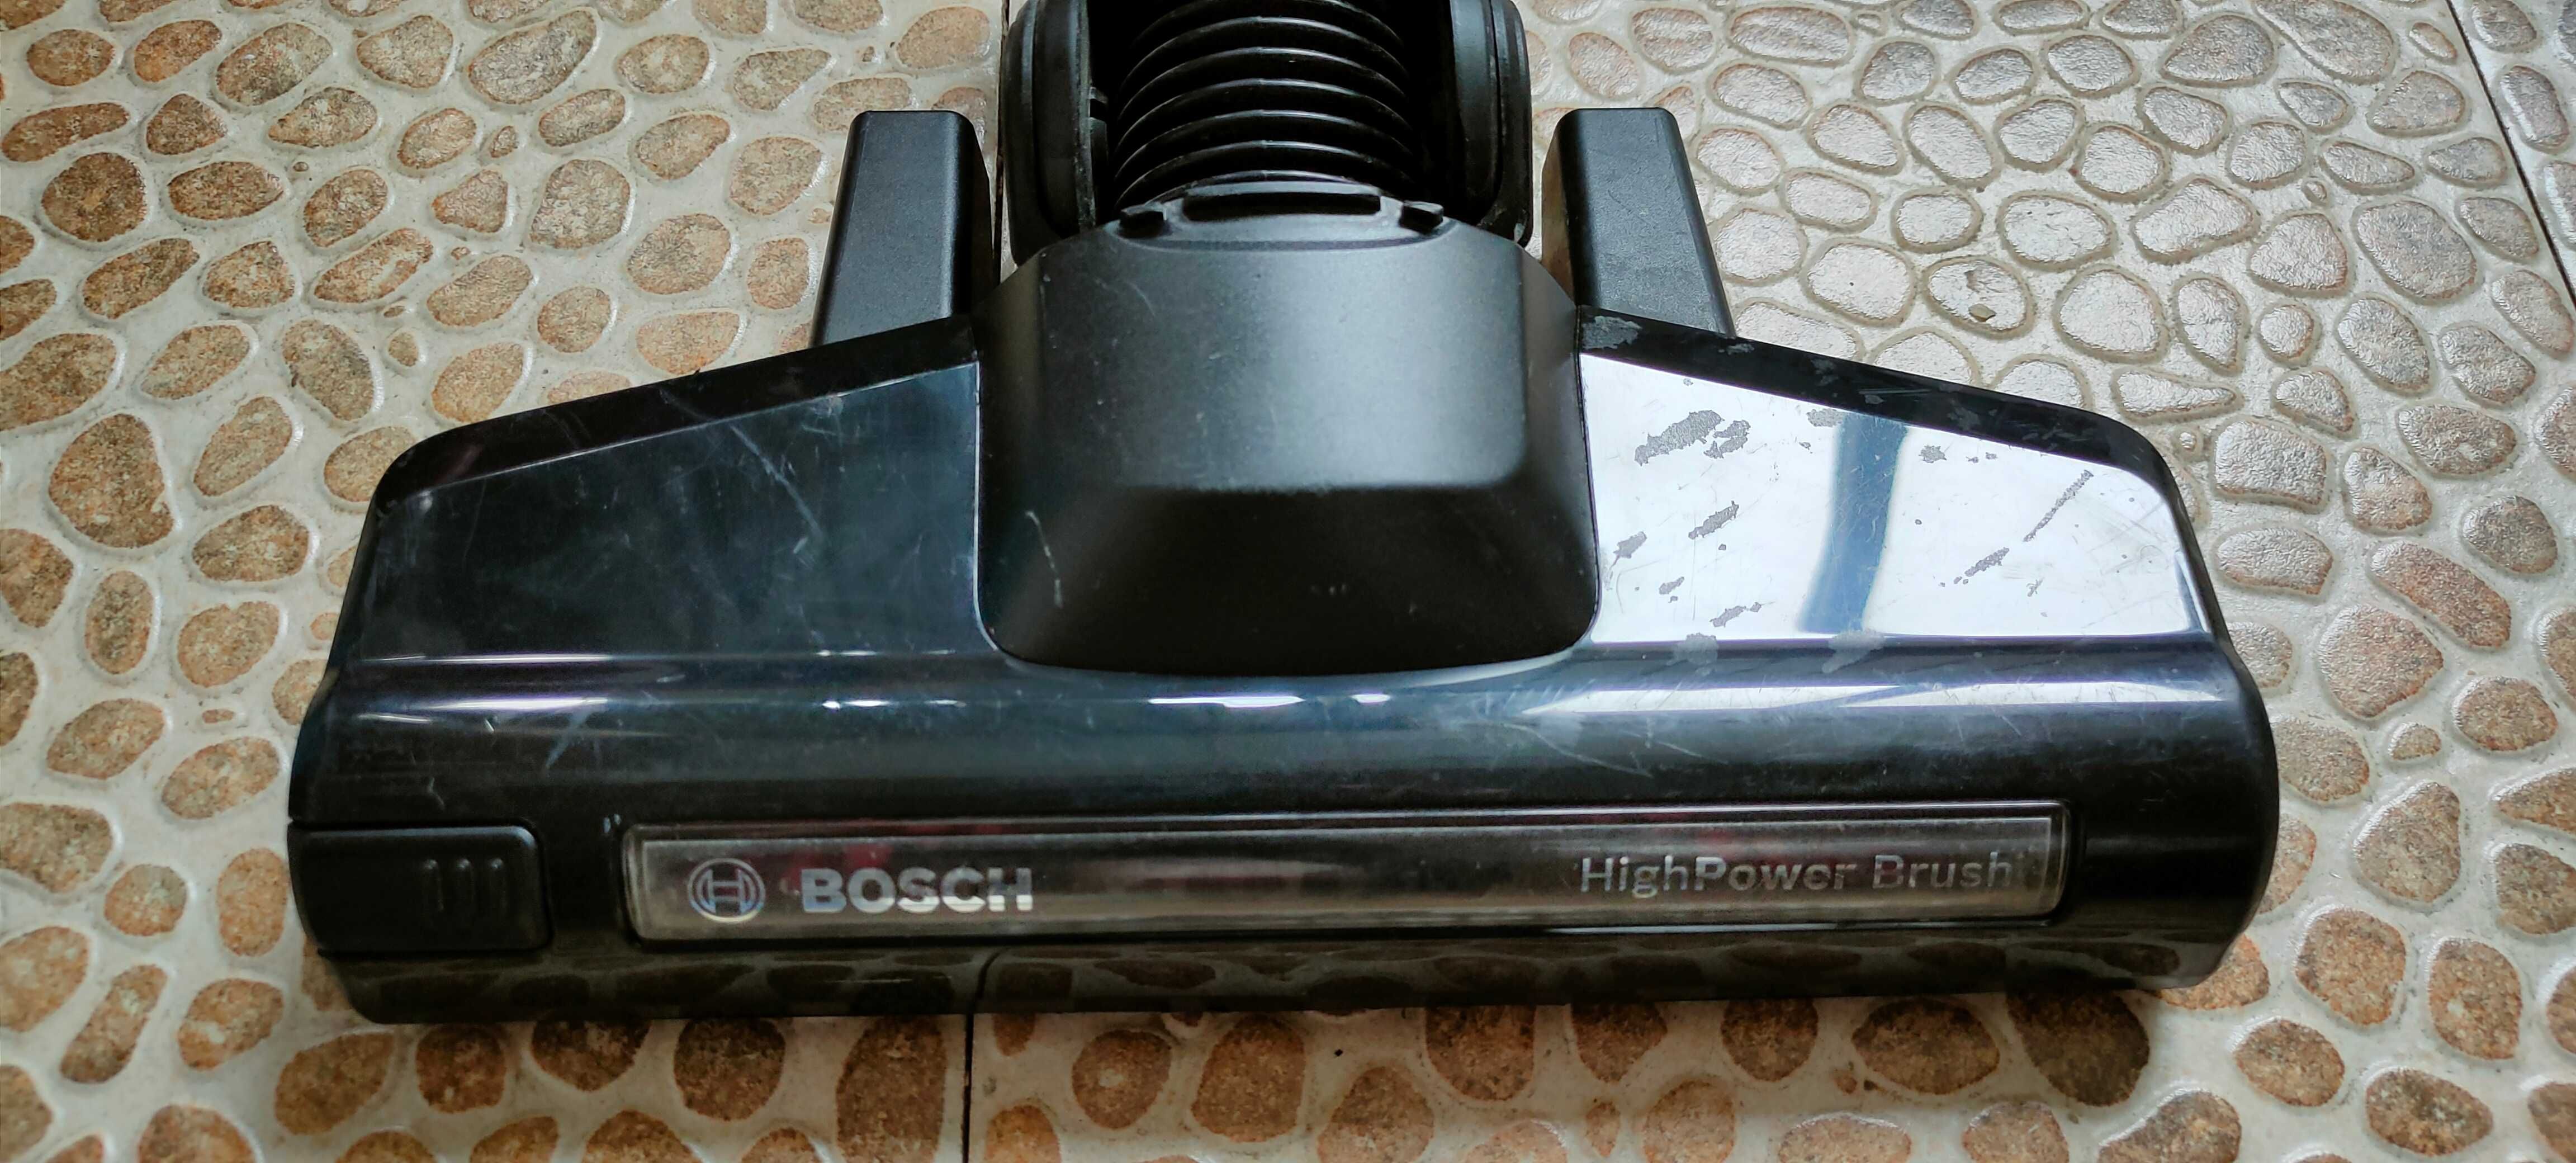 Турбо щётка(Электрощетка)на вертикальный пылесос Bosch BCH 6ATH25